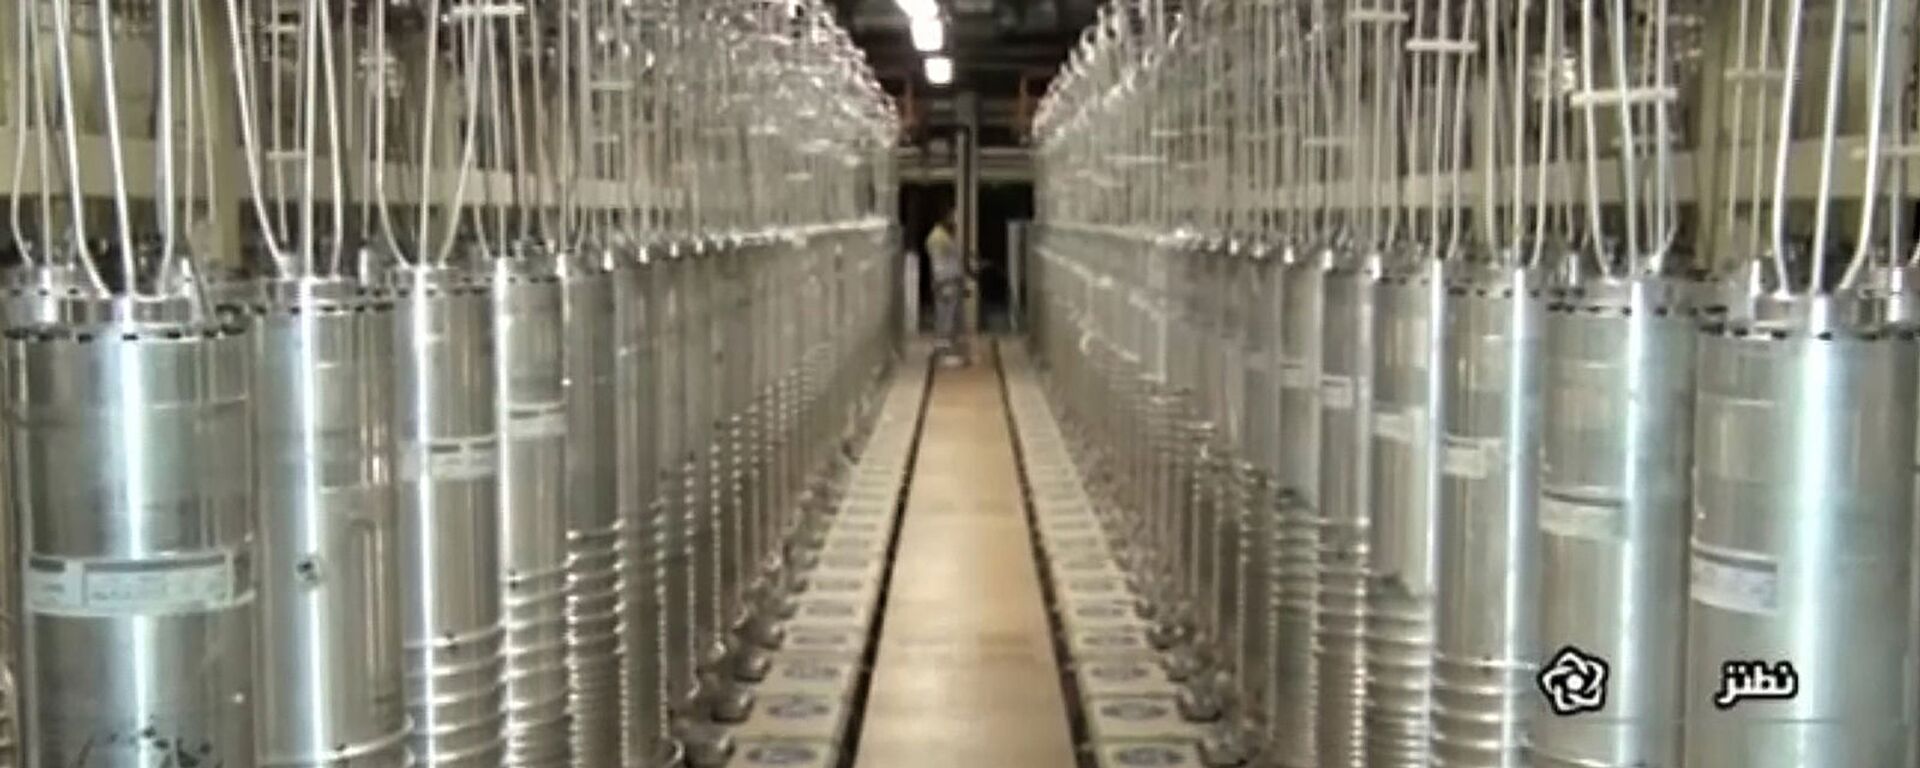 Центрифуги в коридоре на заводе по обогащению урана в Натанзе, к югу от столицы Тегерана  - Sputnik Արմենիա, 1920, 07.05.2021